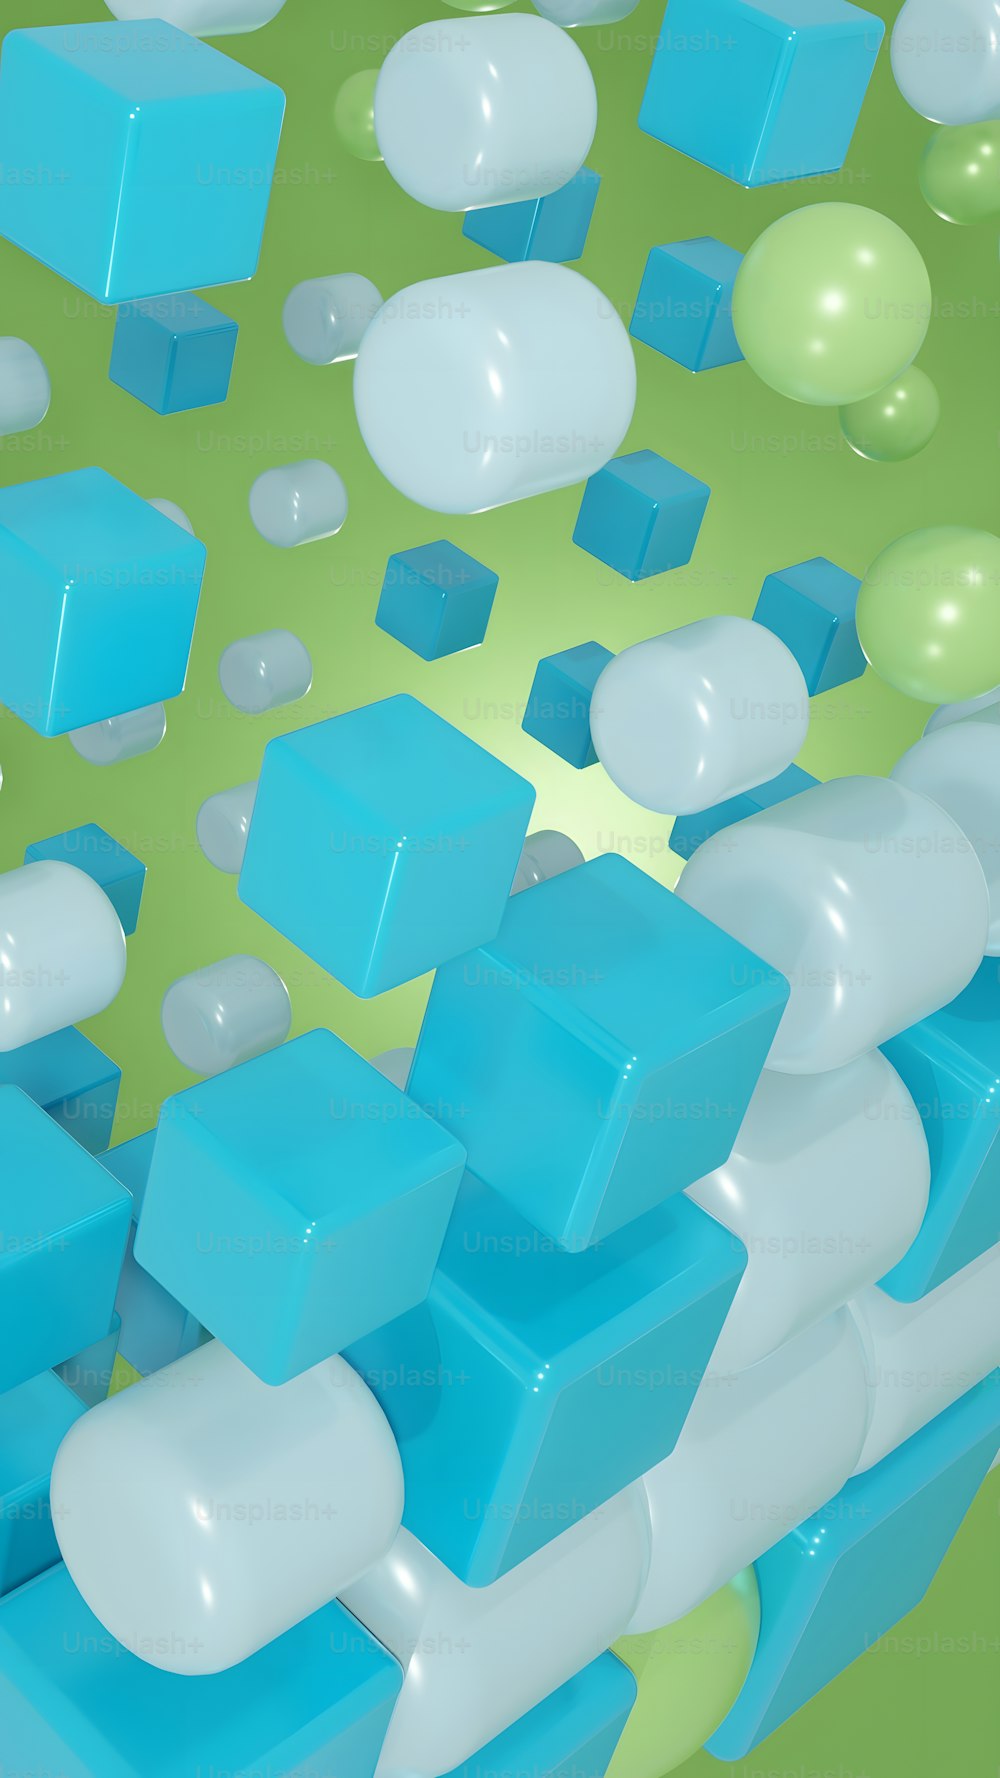 une image générée par ordinateur de cubes bleus et blancs